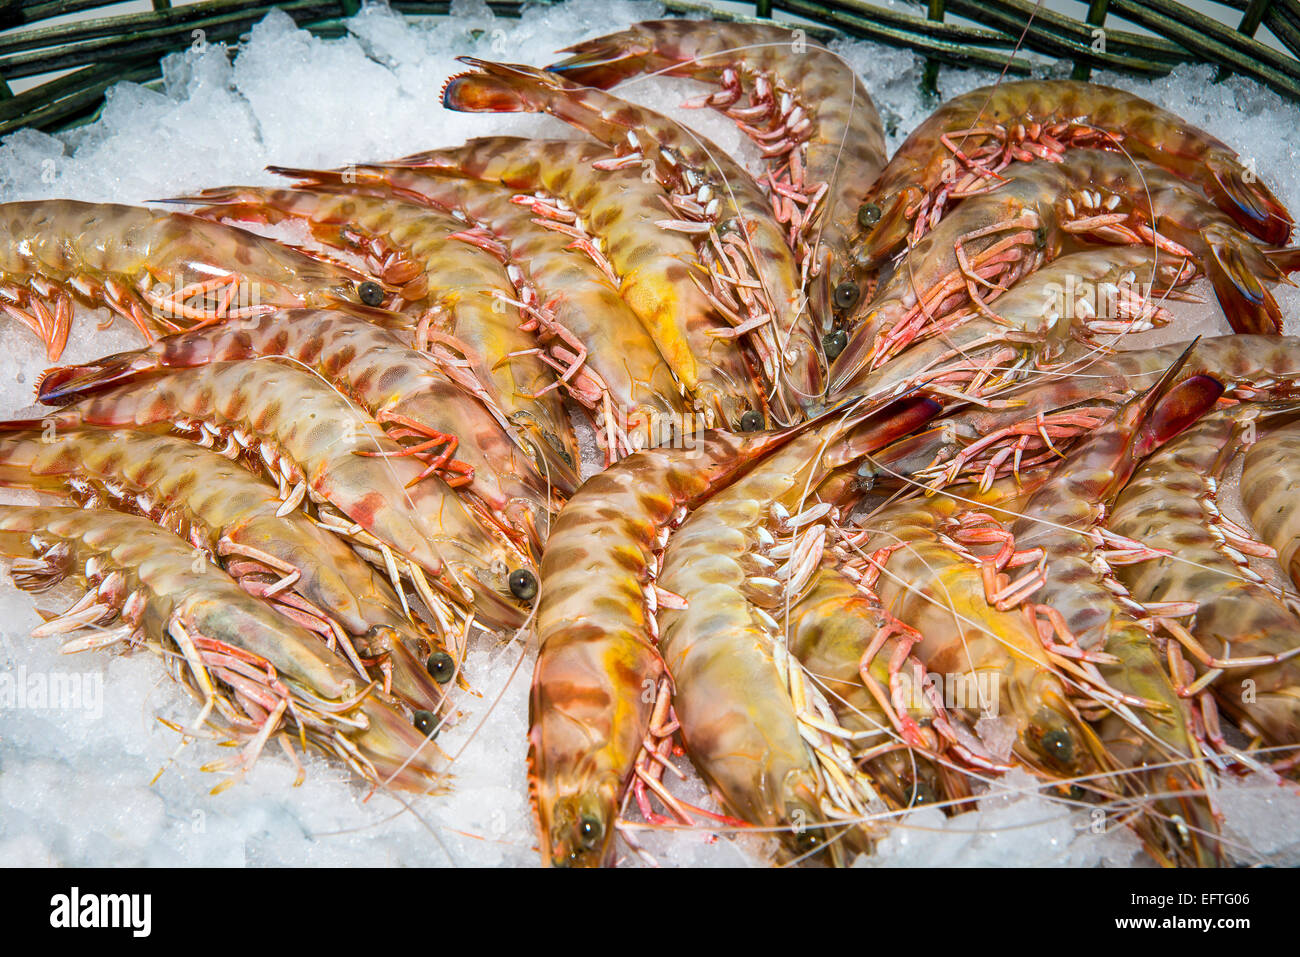 Italien, Marken, Ascoli Piceno, San Benedetto del Tronto, frischer Fisch der Adria, Garnelen. Stockfoto